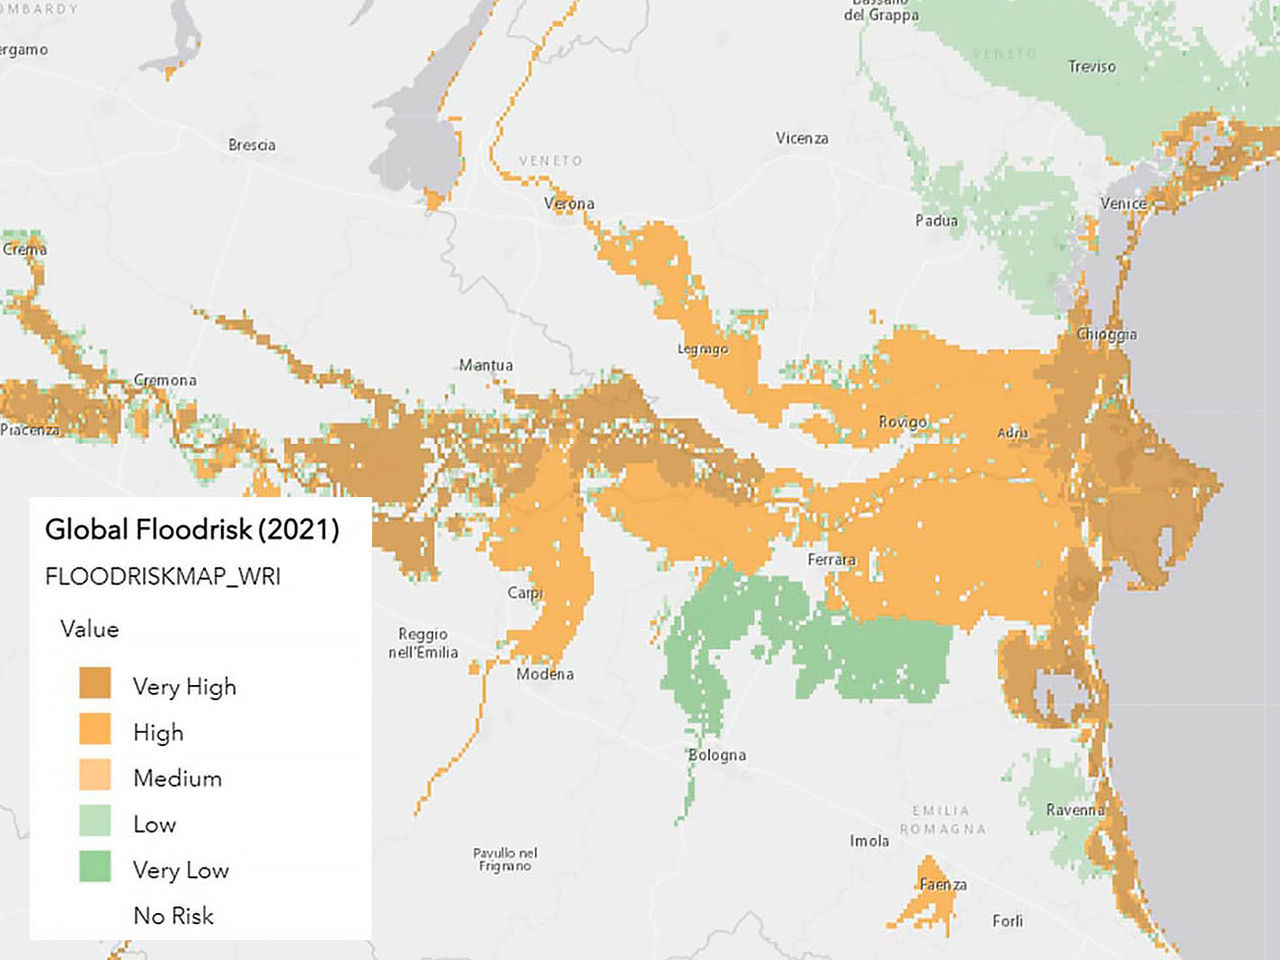 Um mapa de riscos de inundação codificados por cores, parte de uma avaliação de risco climático